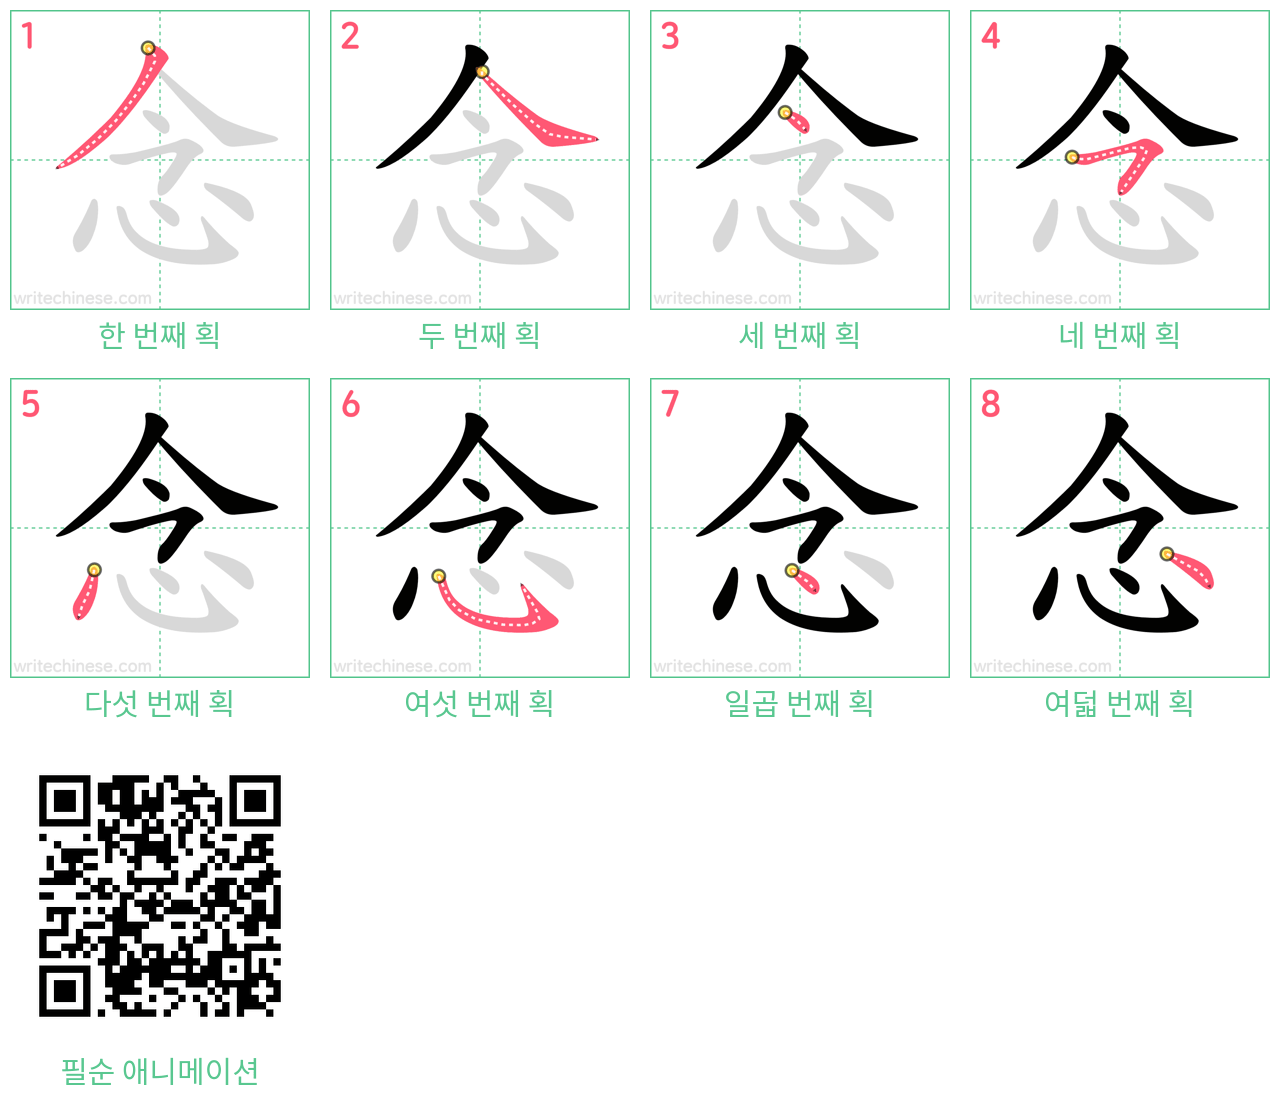 念 step-by-step stroke order diagrams